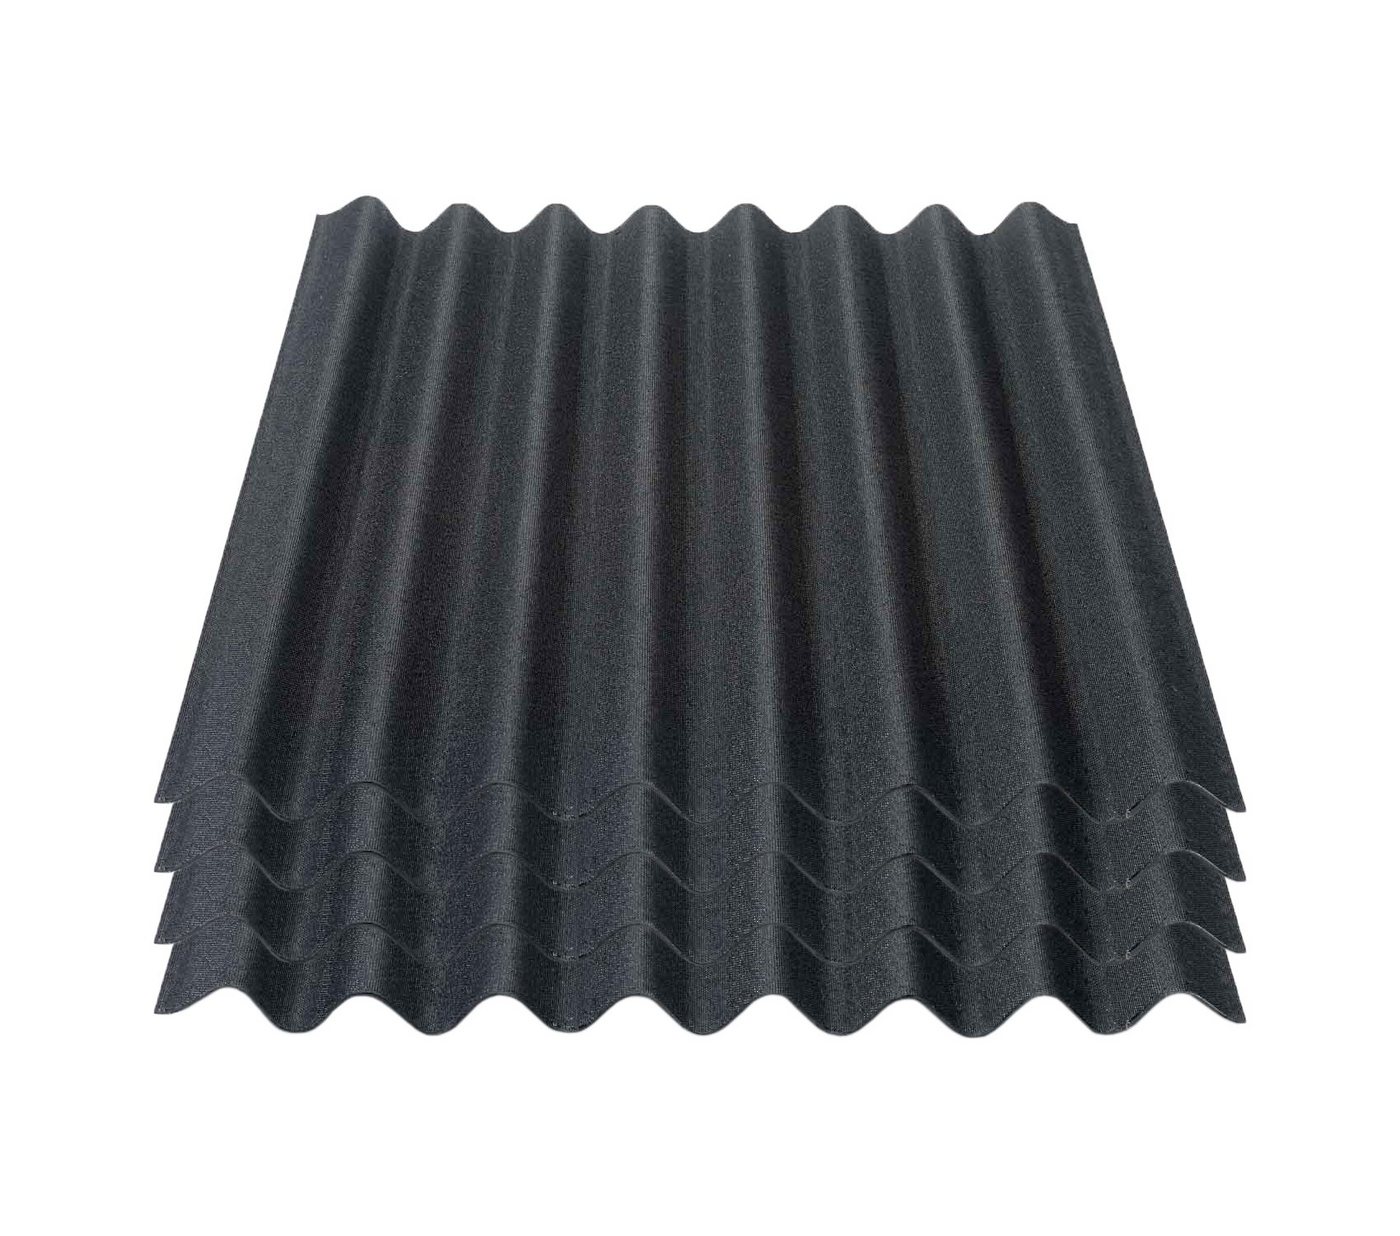 Onduline Dachpappe Onduline Easyline Dachplatte Wandplatte Bitumenwellplatten Wellplatte 4x0,76m² - schwarz, wellig, 3.04 m² pro Paket, (4-St) von Onduline